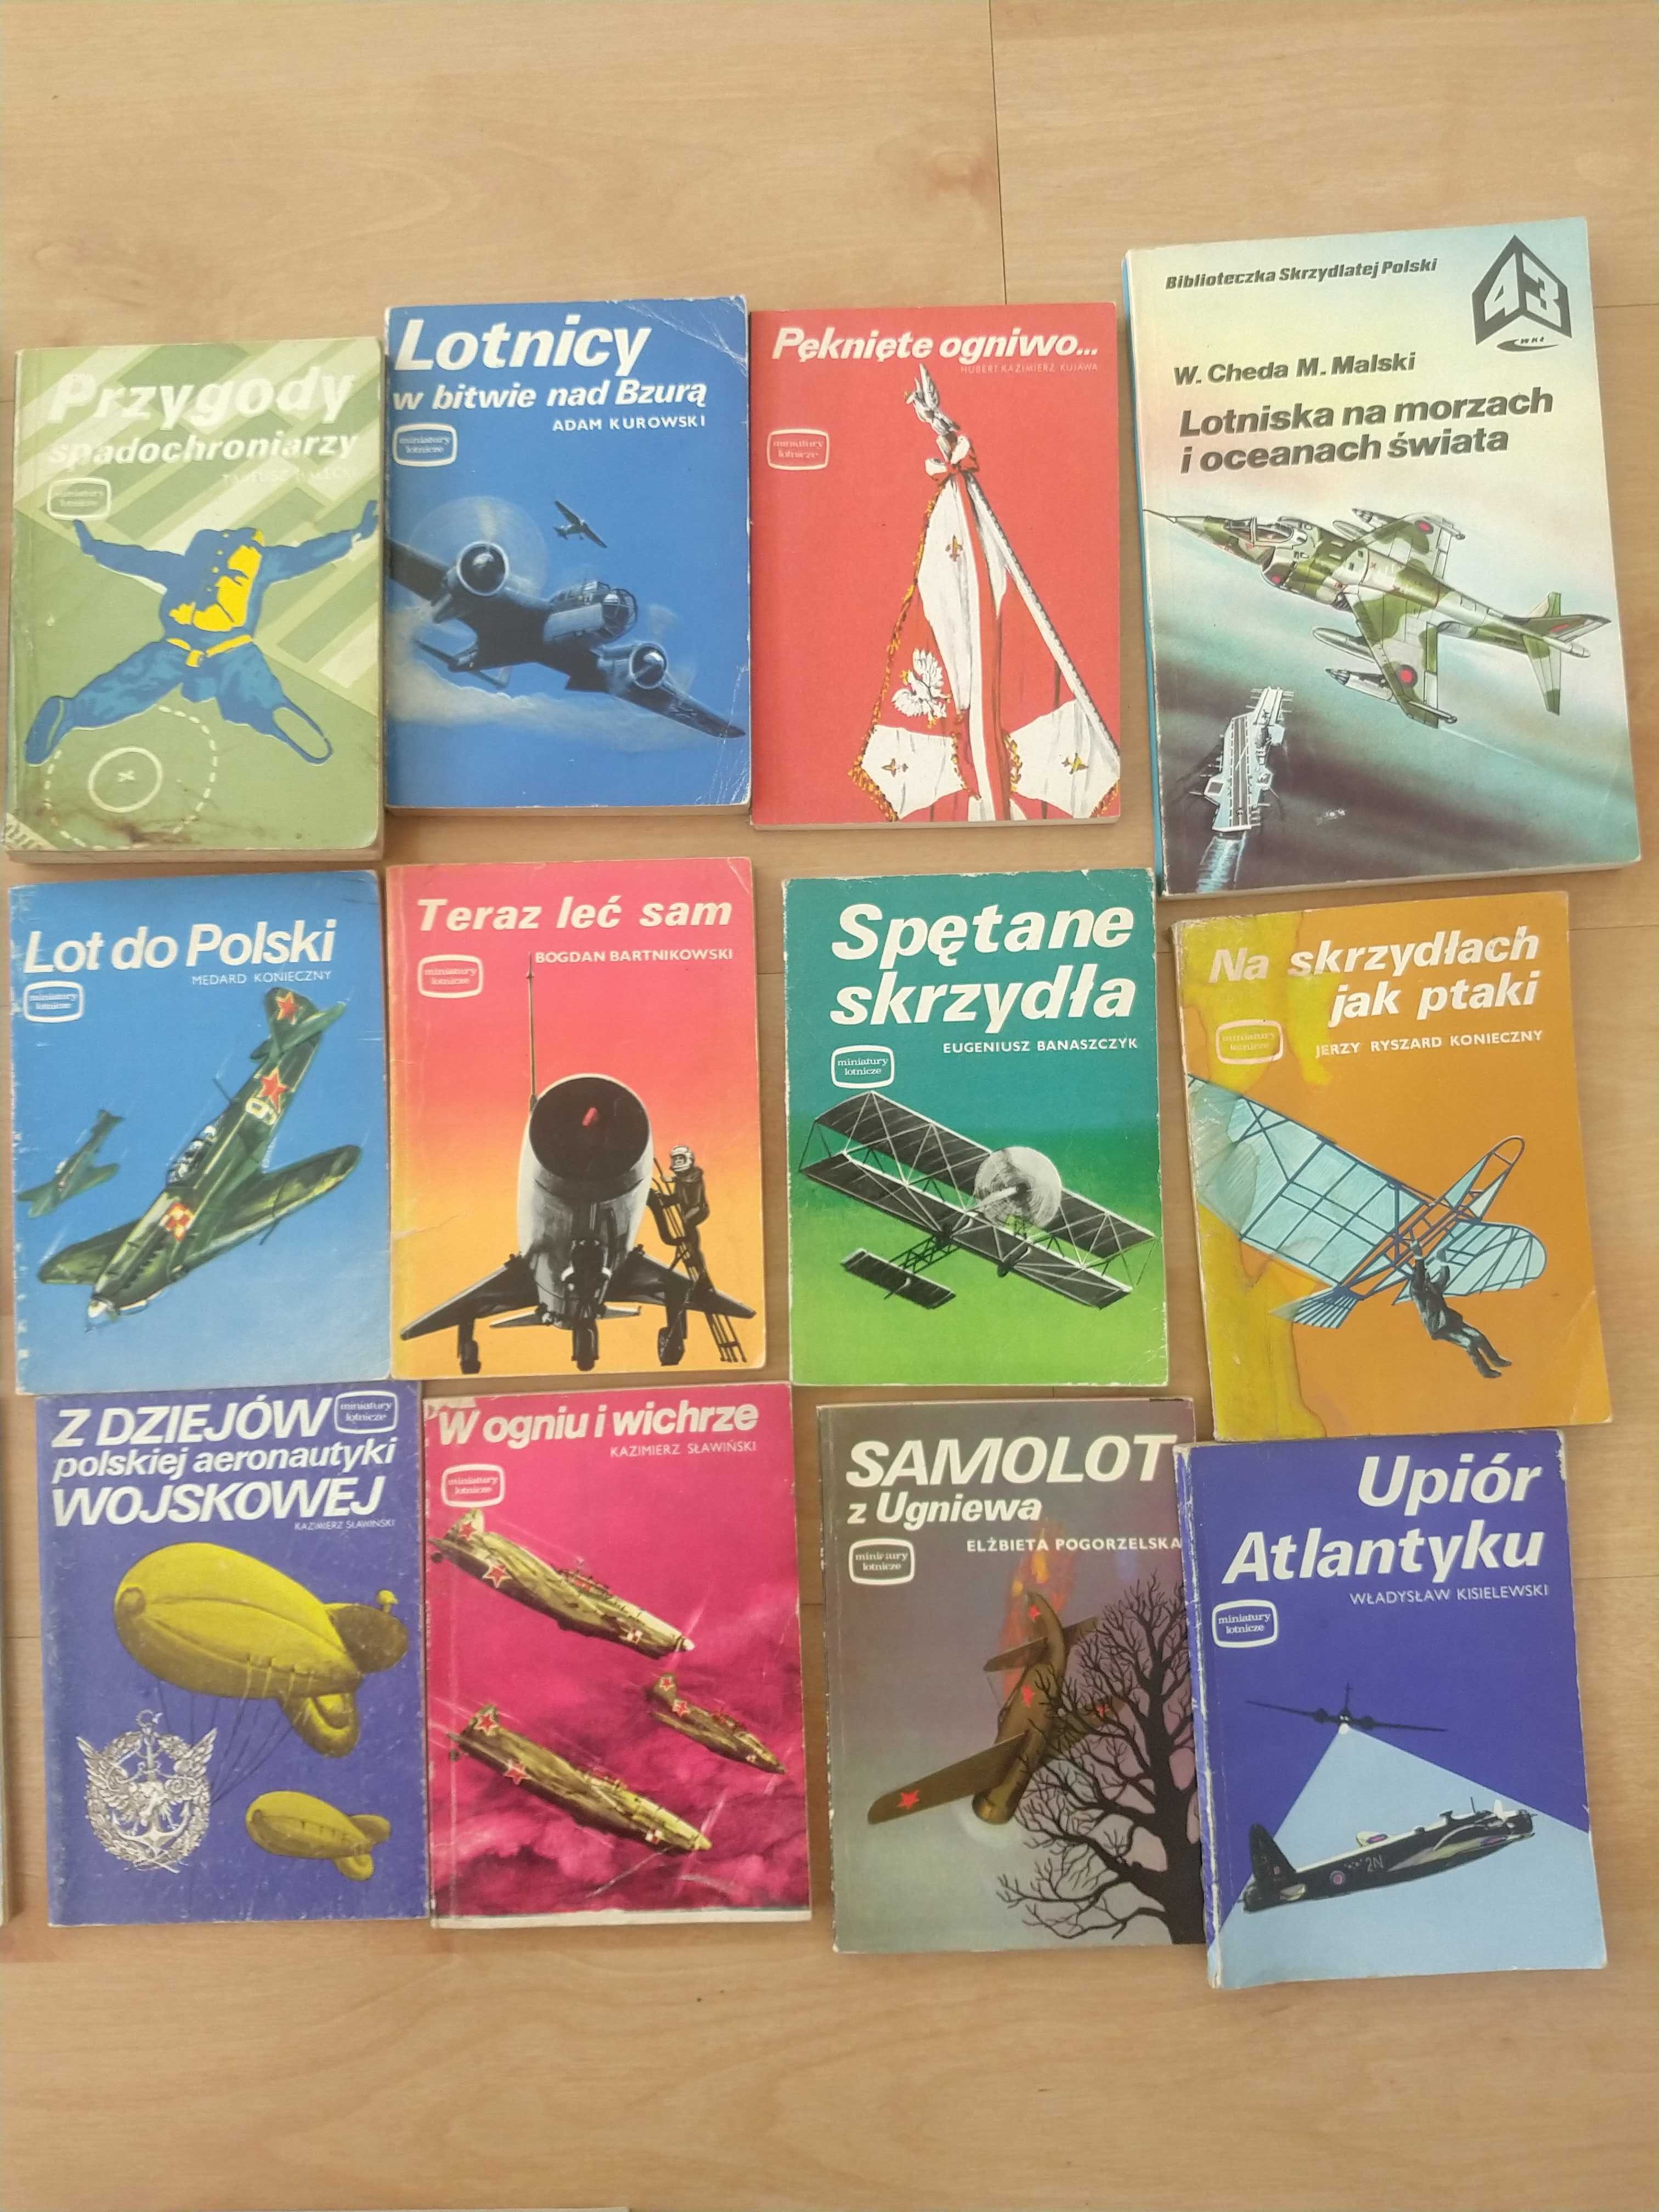 Miniatury lotnicze,Biblioteka skrzydlatej Polski,Samoloty